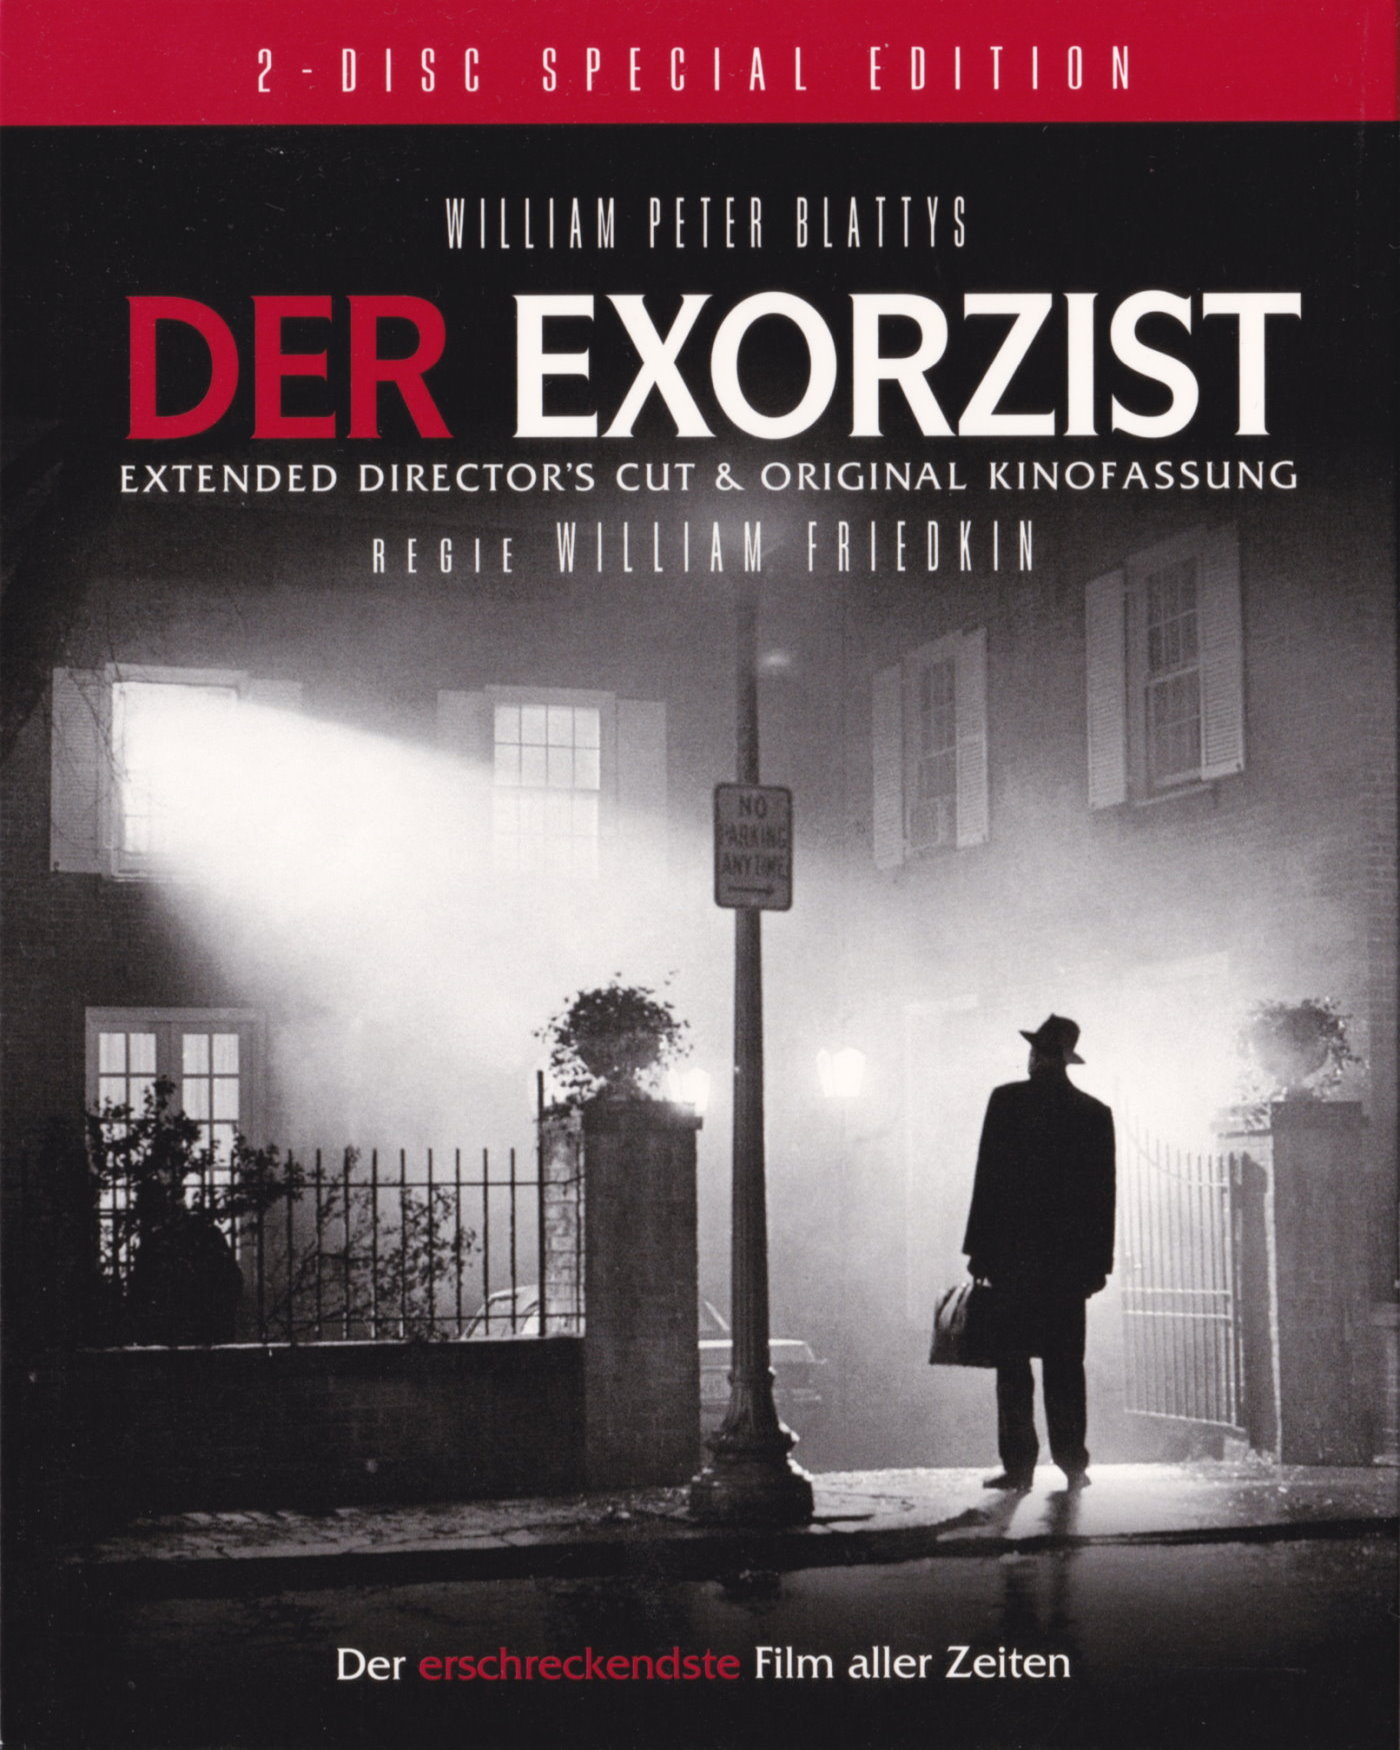 Cover - Der Exorzist.jpg